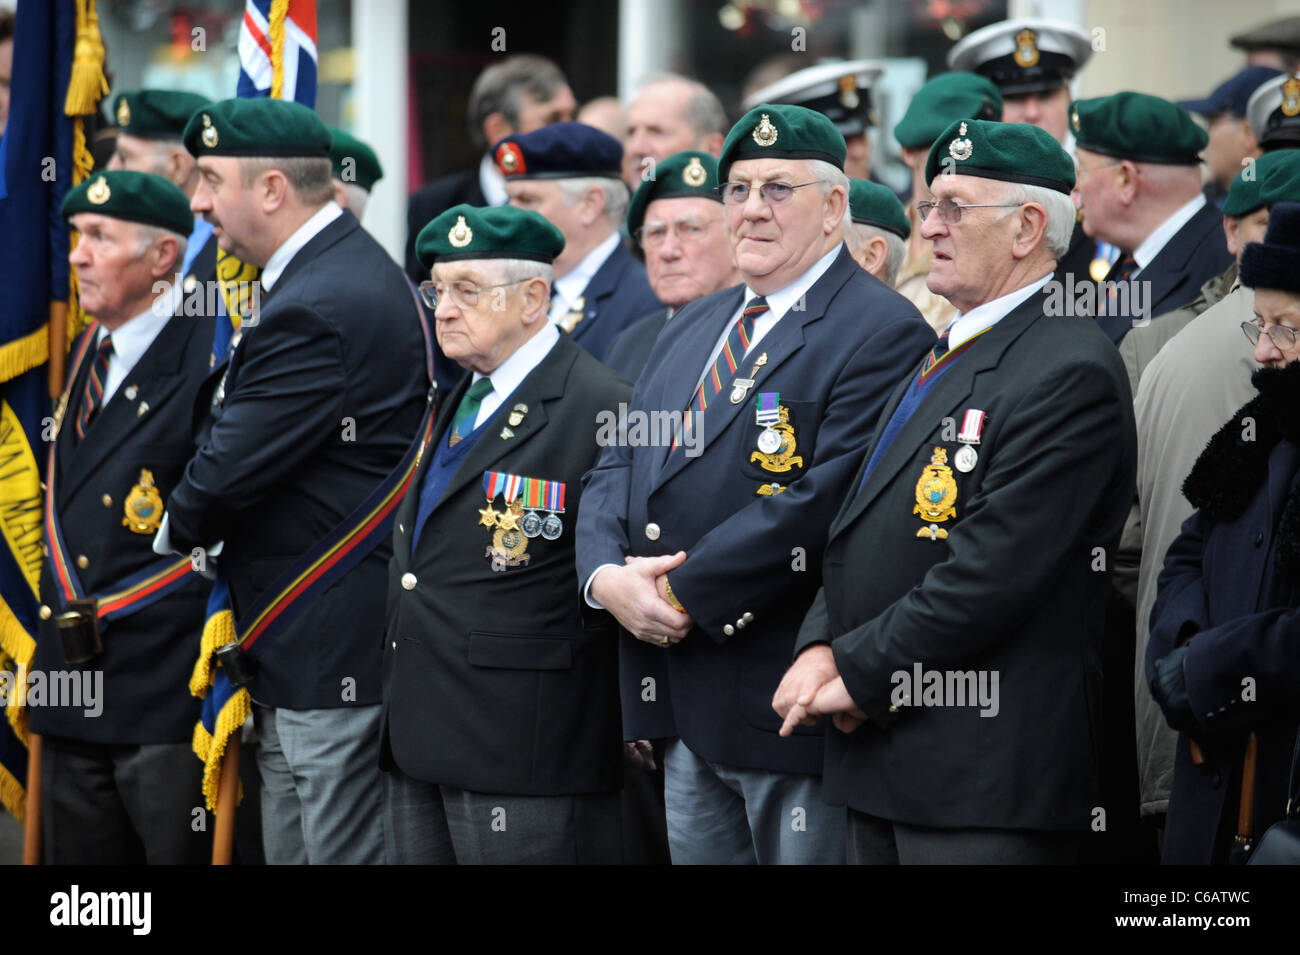 Royal Marines veterani tra persone in lutto si sono riuniti per una cerimonia di rimpatrio a Wootton Bassett, Wiltshire REGNO UNITO Dic 2008 Foto Stock